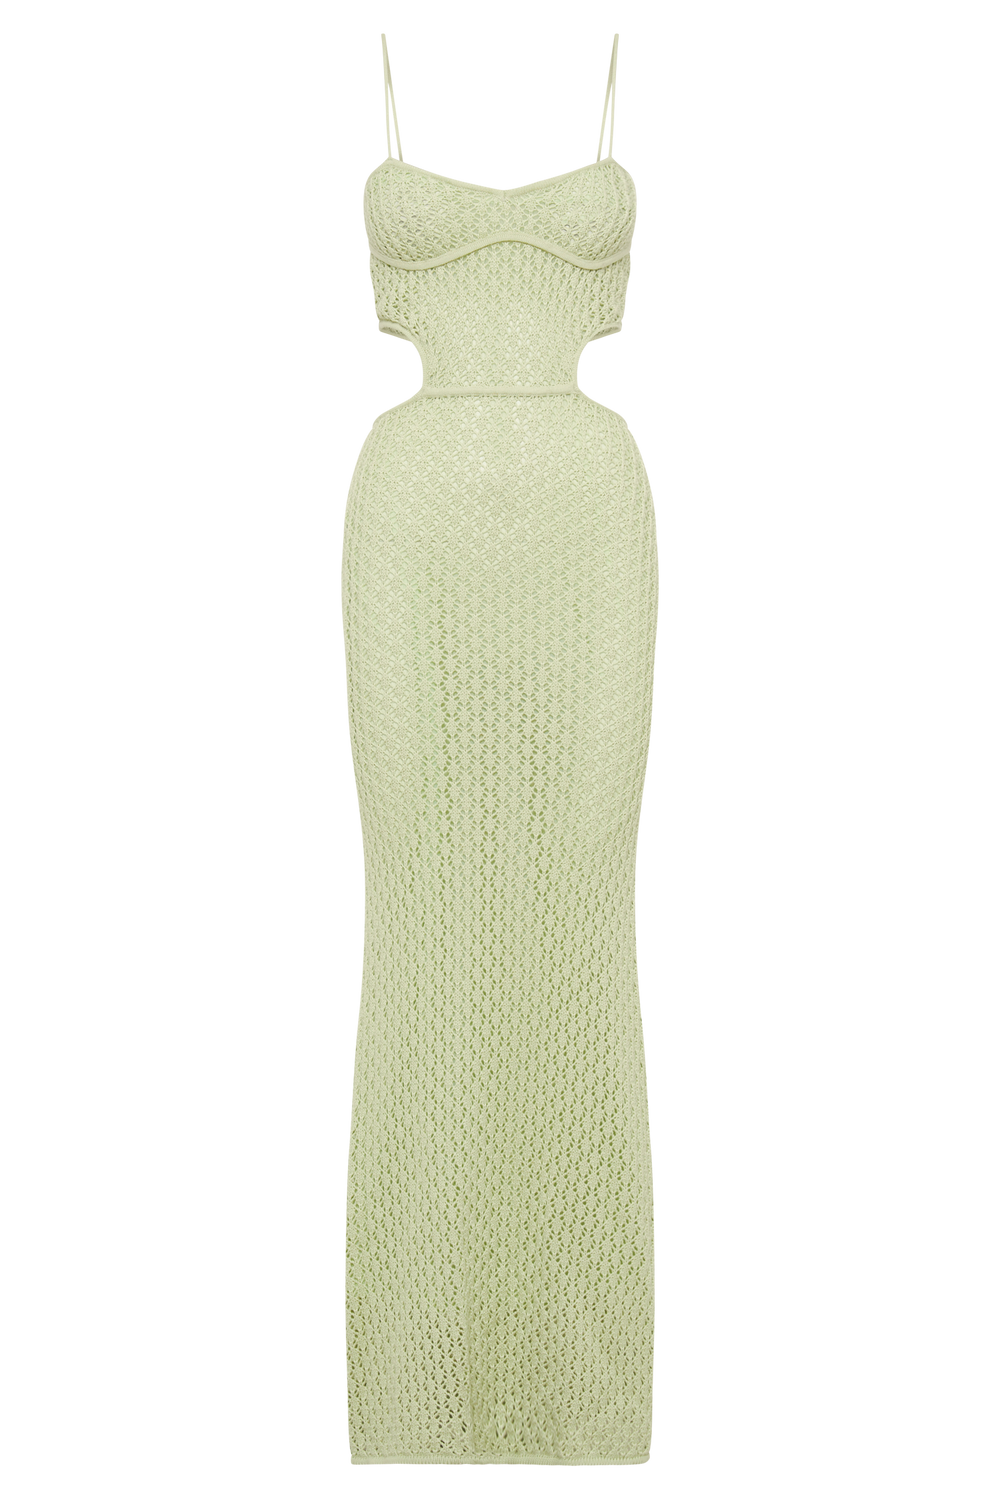 Nerida Knit Cut Out Maxi Dress - Seafoam Green